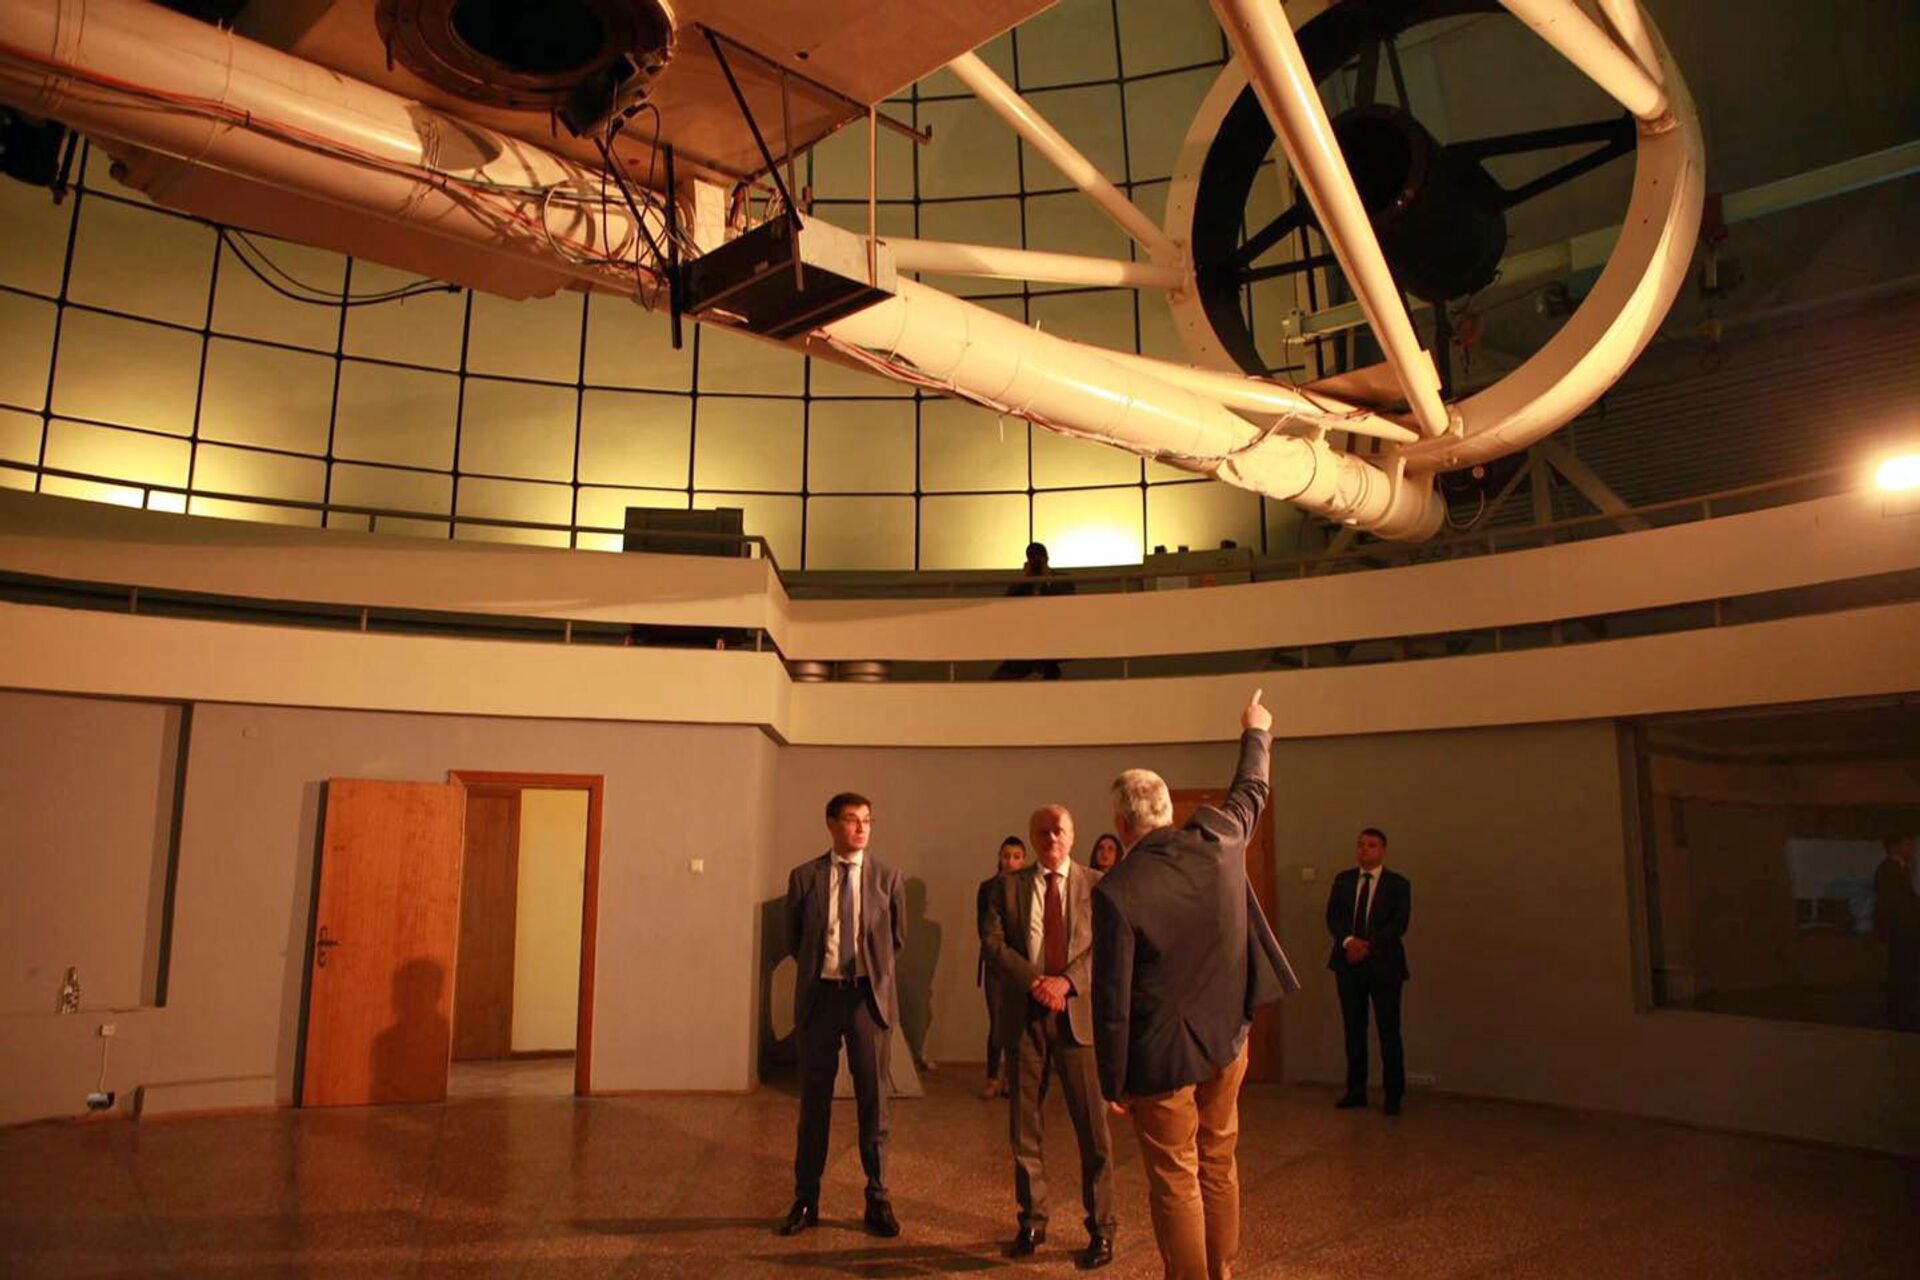 Ռուսաստանի դեսպանն այցելել է Բյուրականի աստղադիտարան - Sputnik Արմենիա, 1920, 10.04.2021